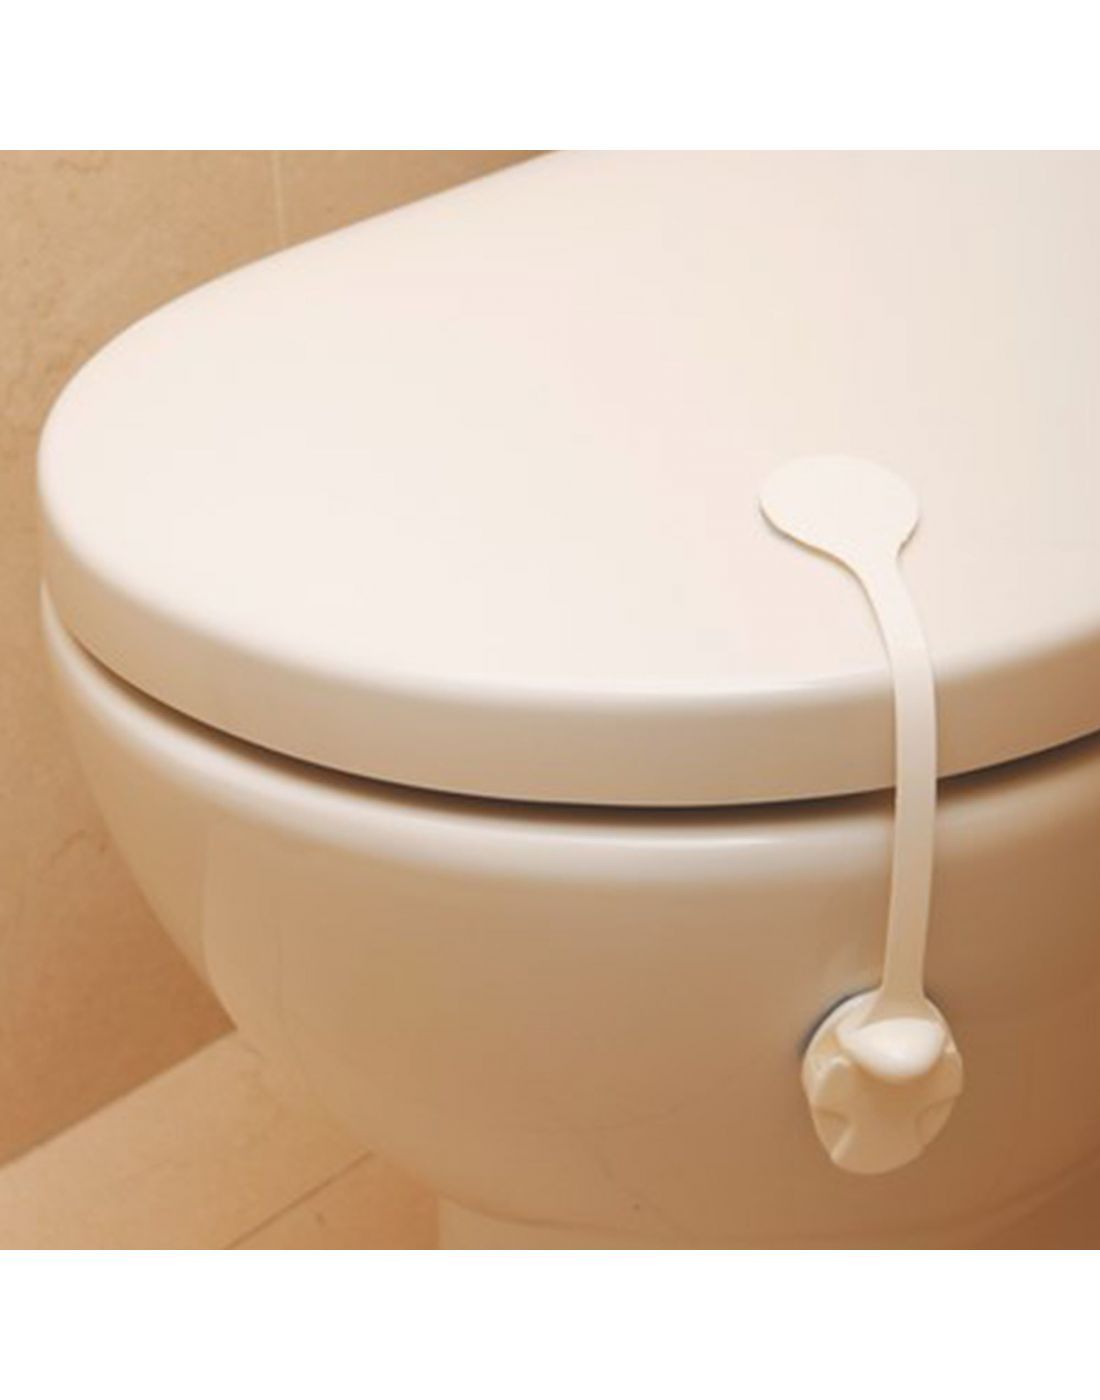 DreamBaby Kids Toilet Lock White